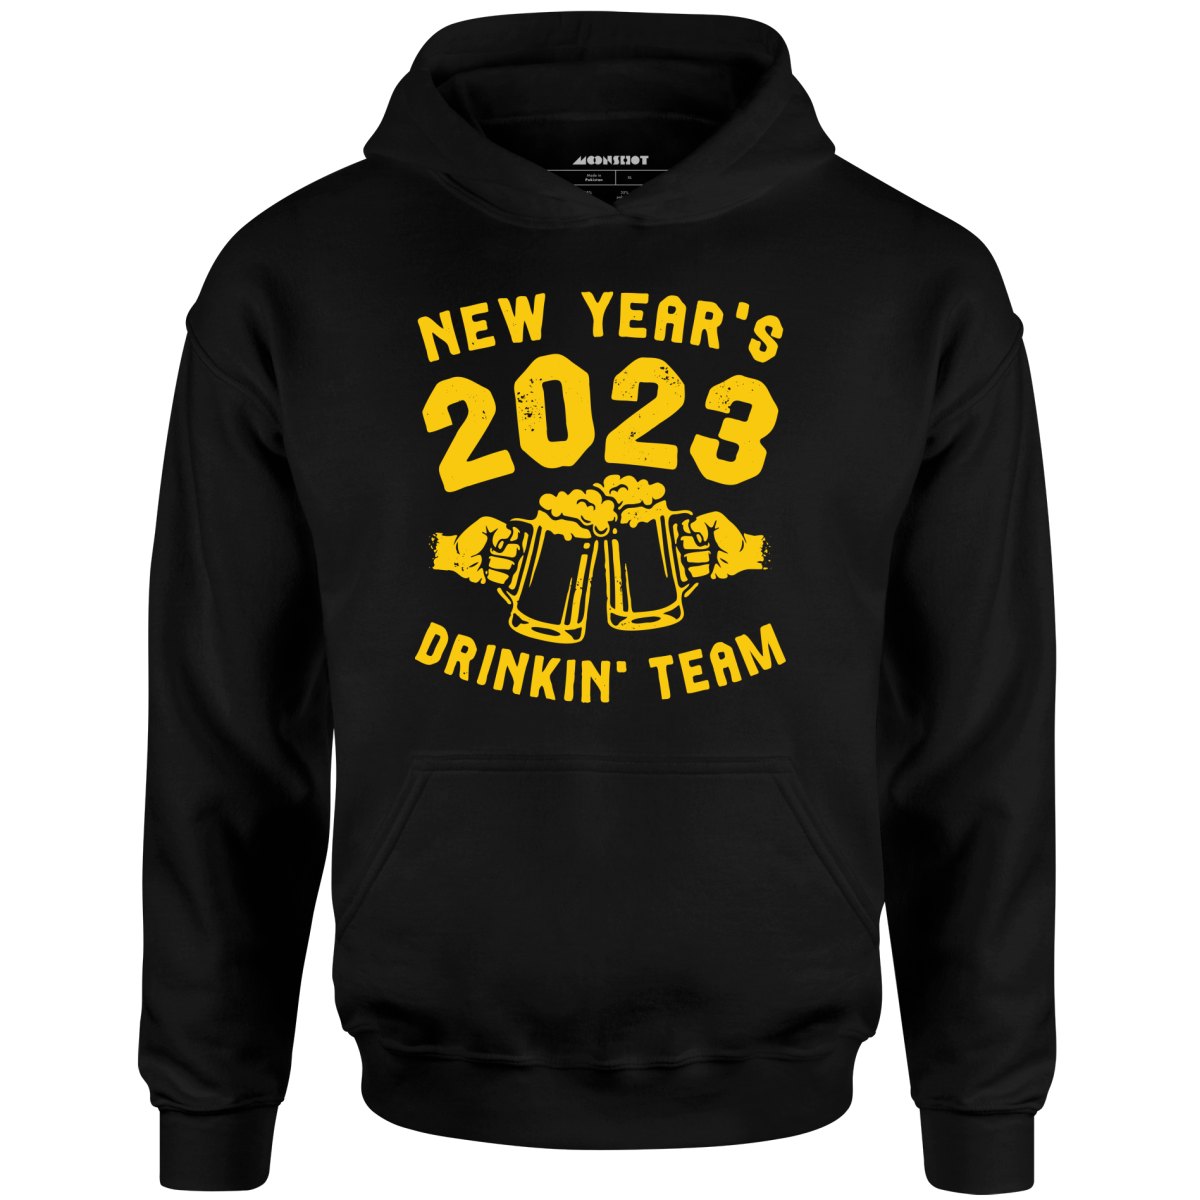 New Year's 2023 Drinkin' Team - Unisex Hoodie